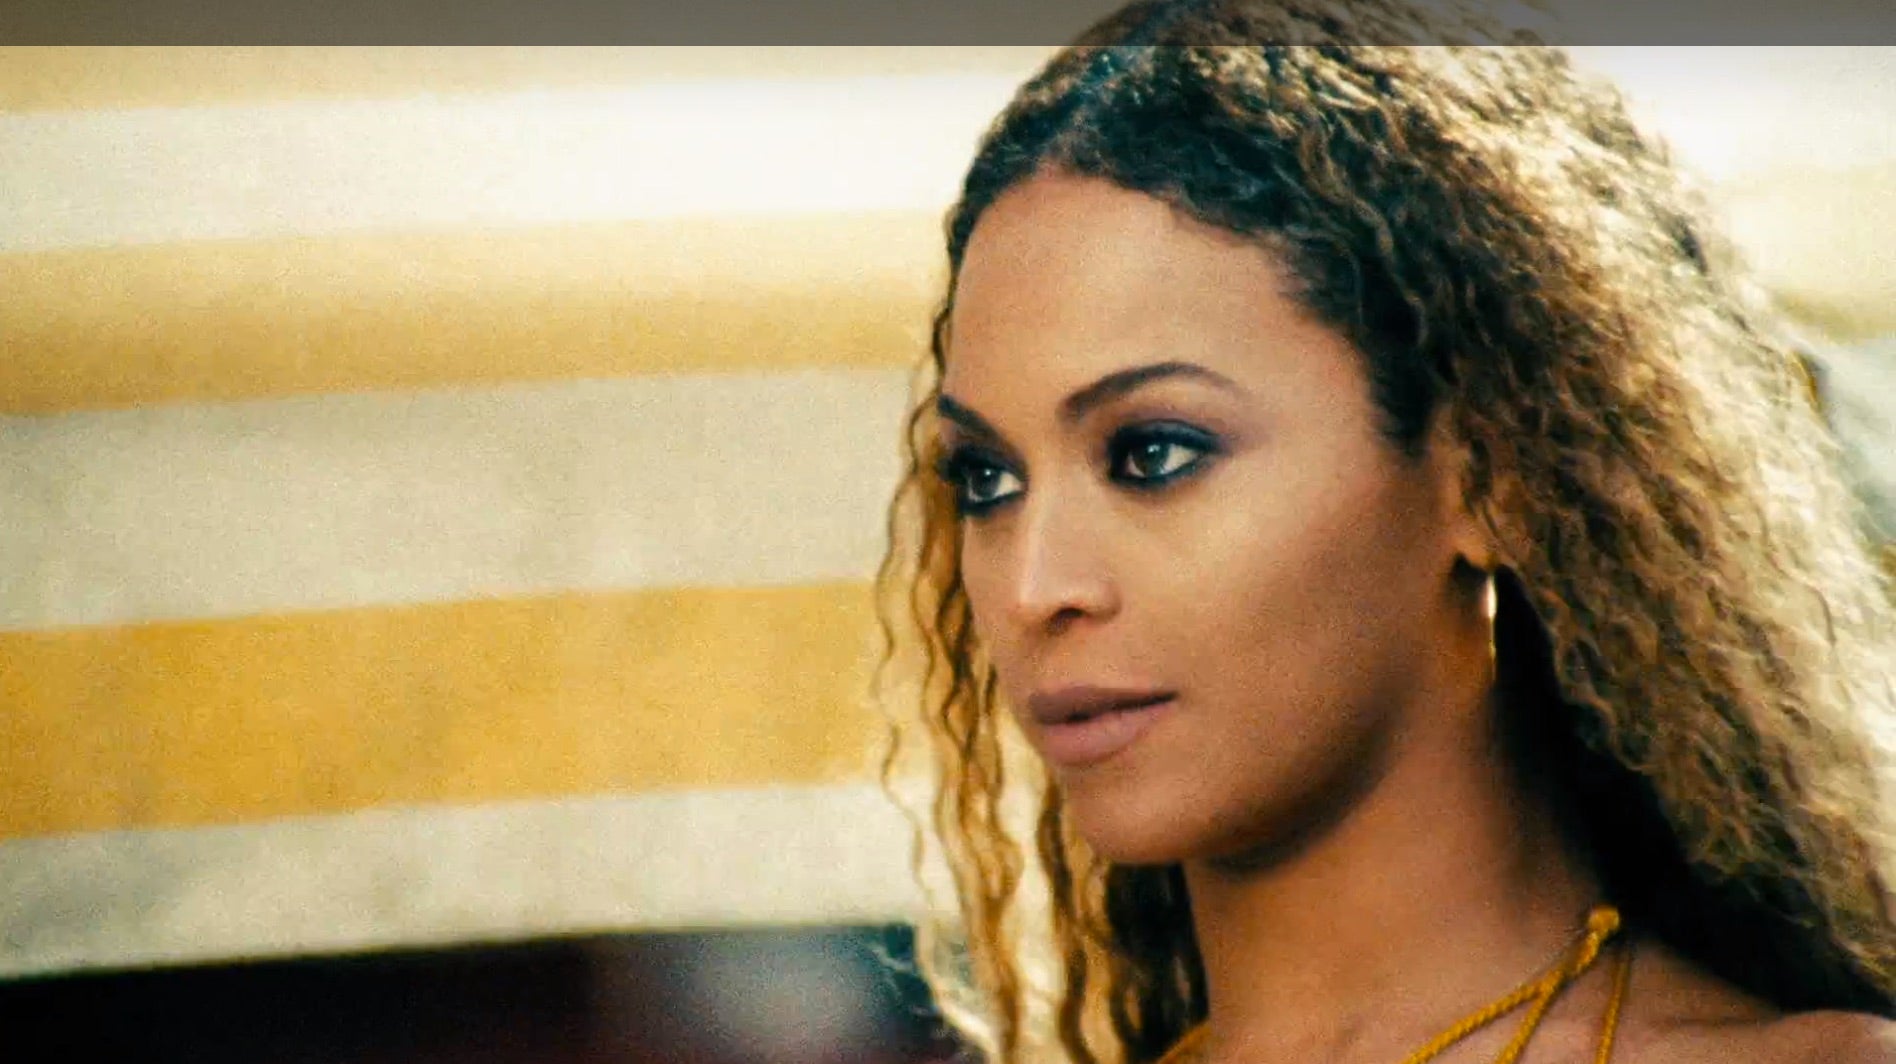 Slay Like Bey, Master Beyonce’s Top 5 Lemonade Hair looks
